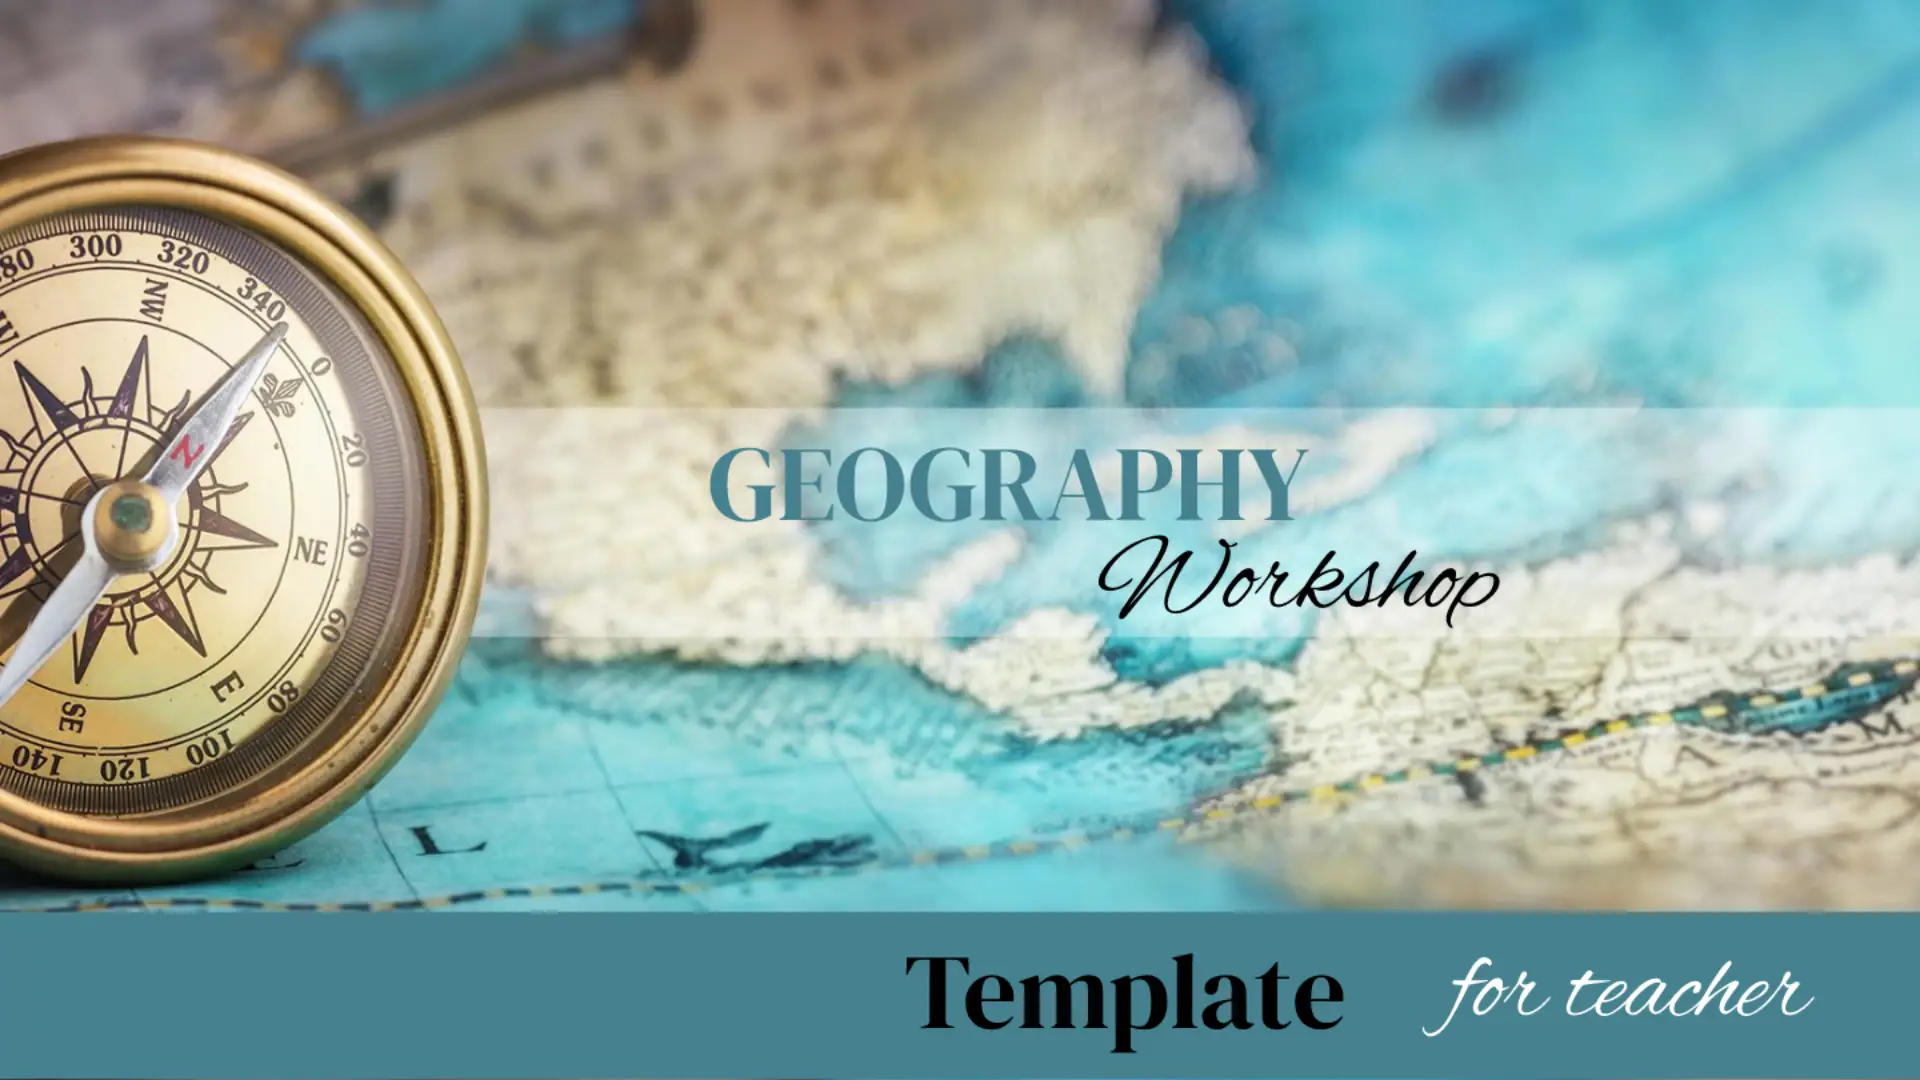 Geography Workshop Template for Google Slides